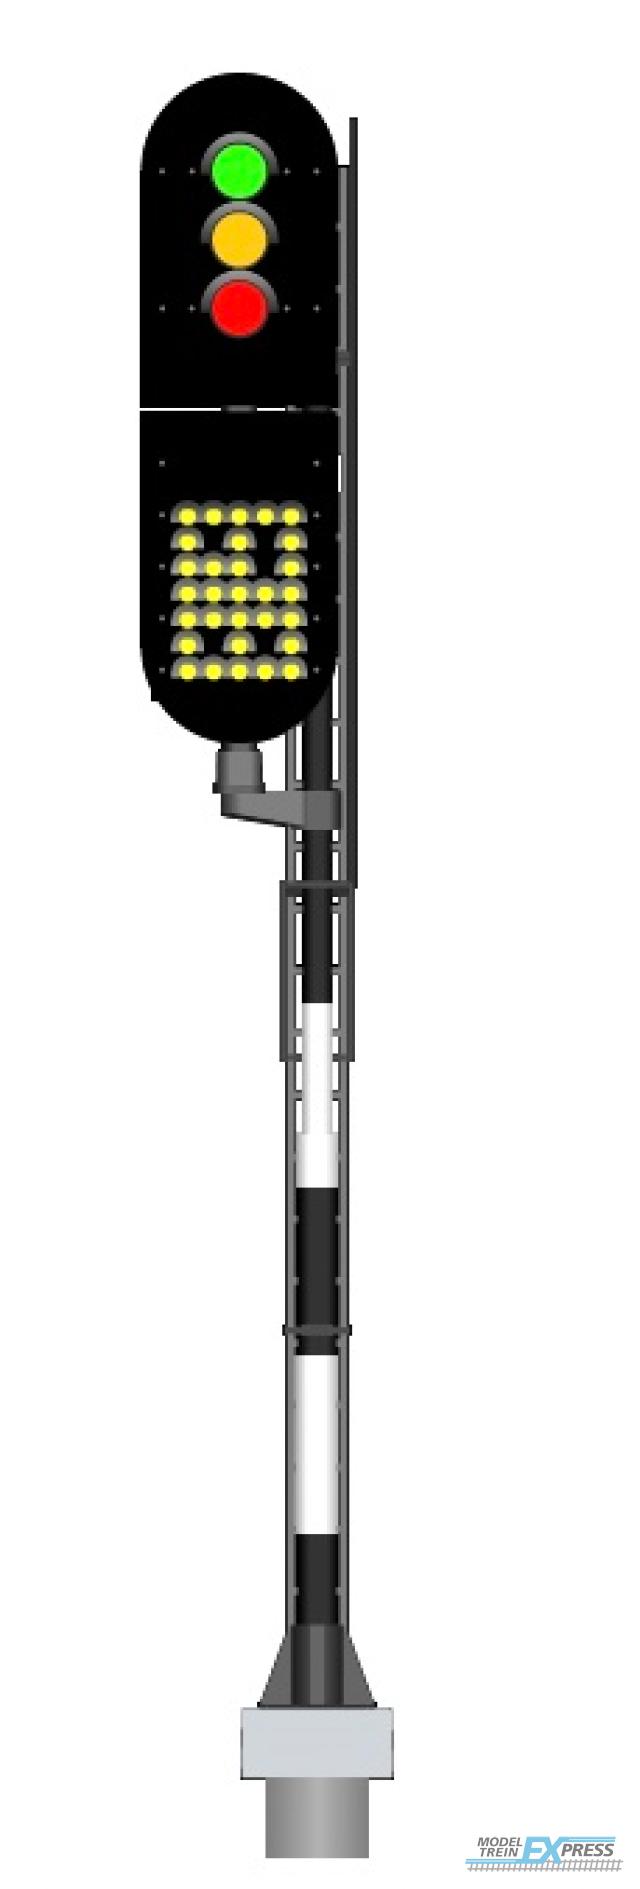 Mafen 913709 NS - Hauptsignal mit 3 LEDs mit Geschwindigkeitsanzeiger (Grün/Gelb/Rot) - links